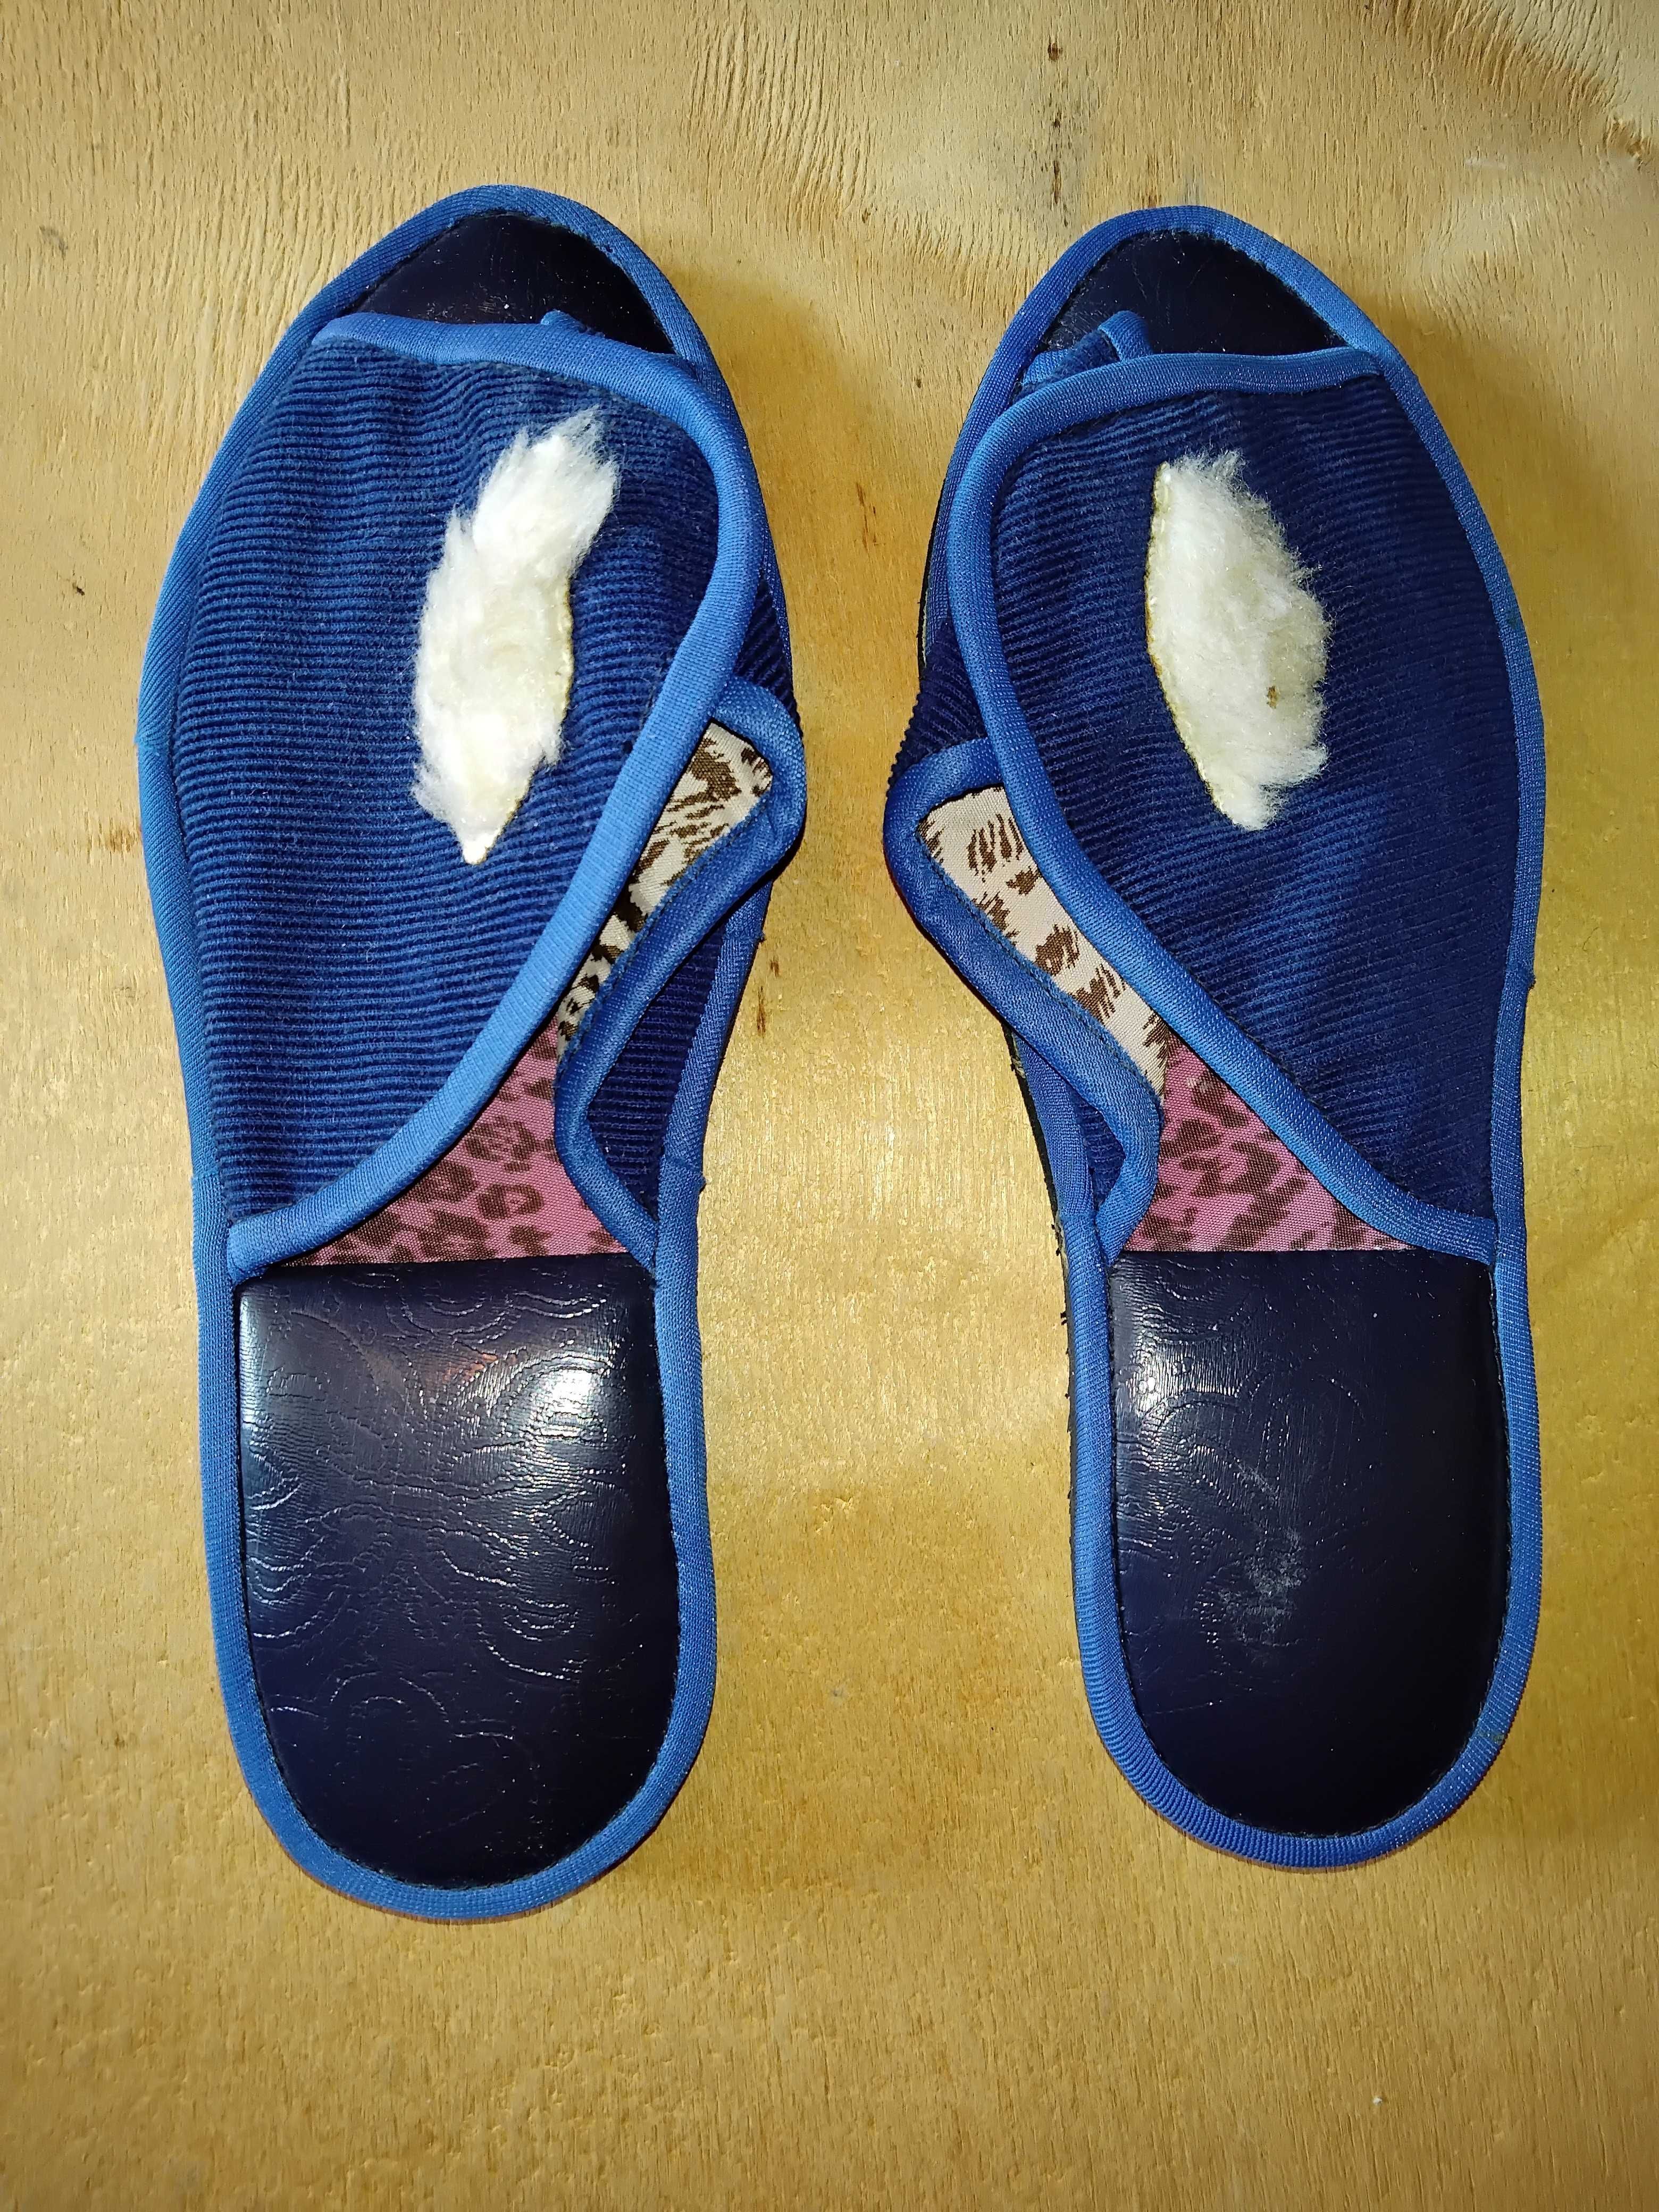 Новые домашние тапки для девочки , открытый носок , размеры 36-37 .